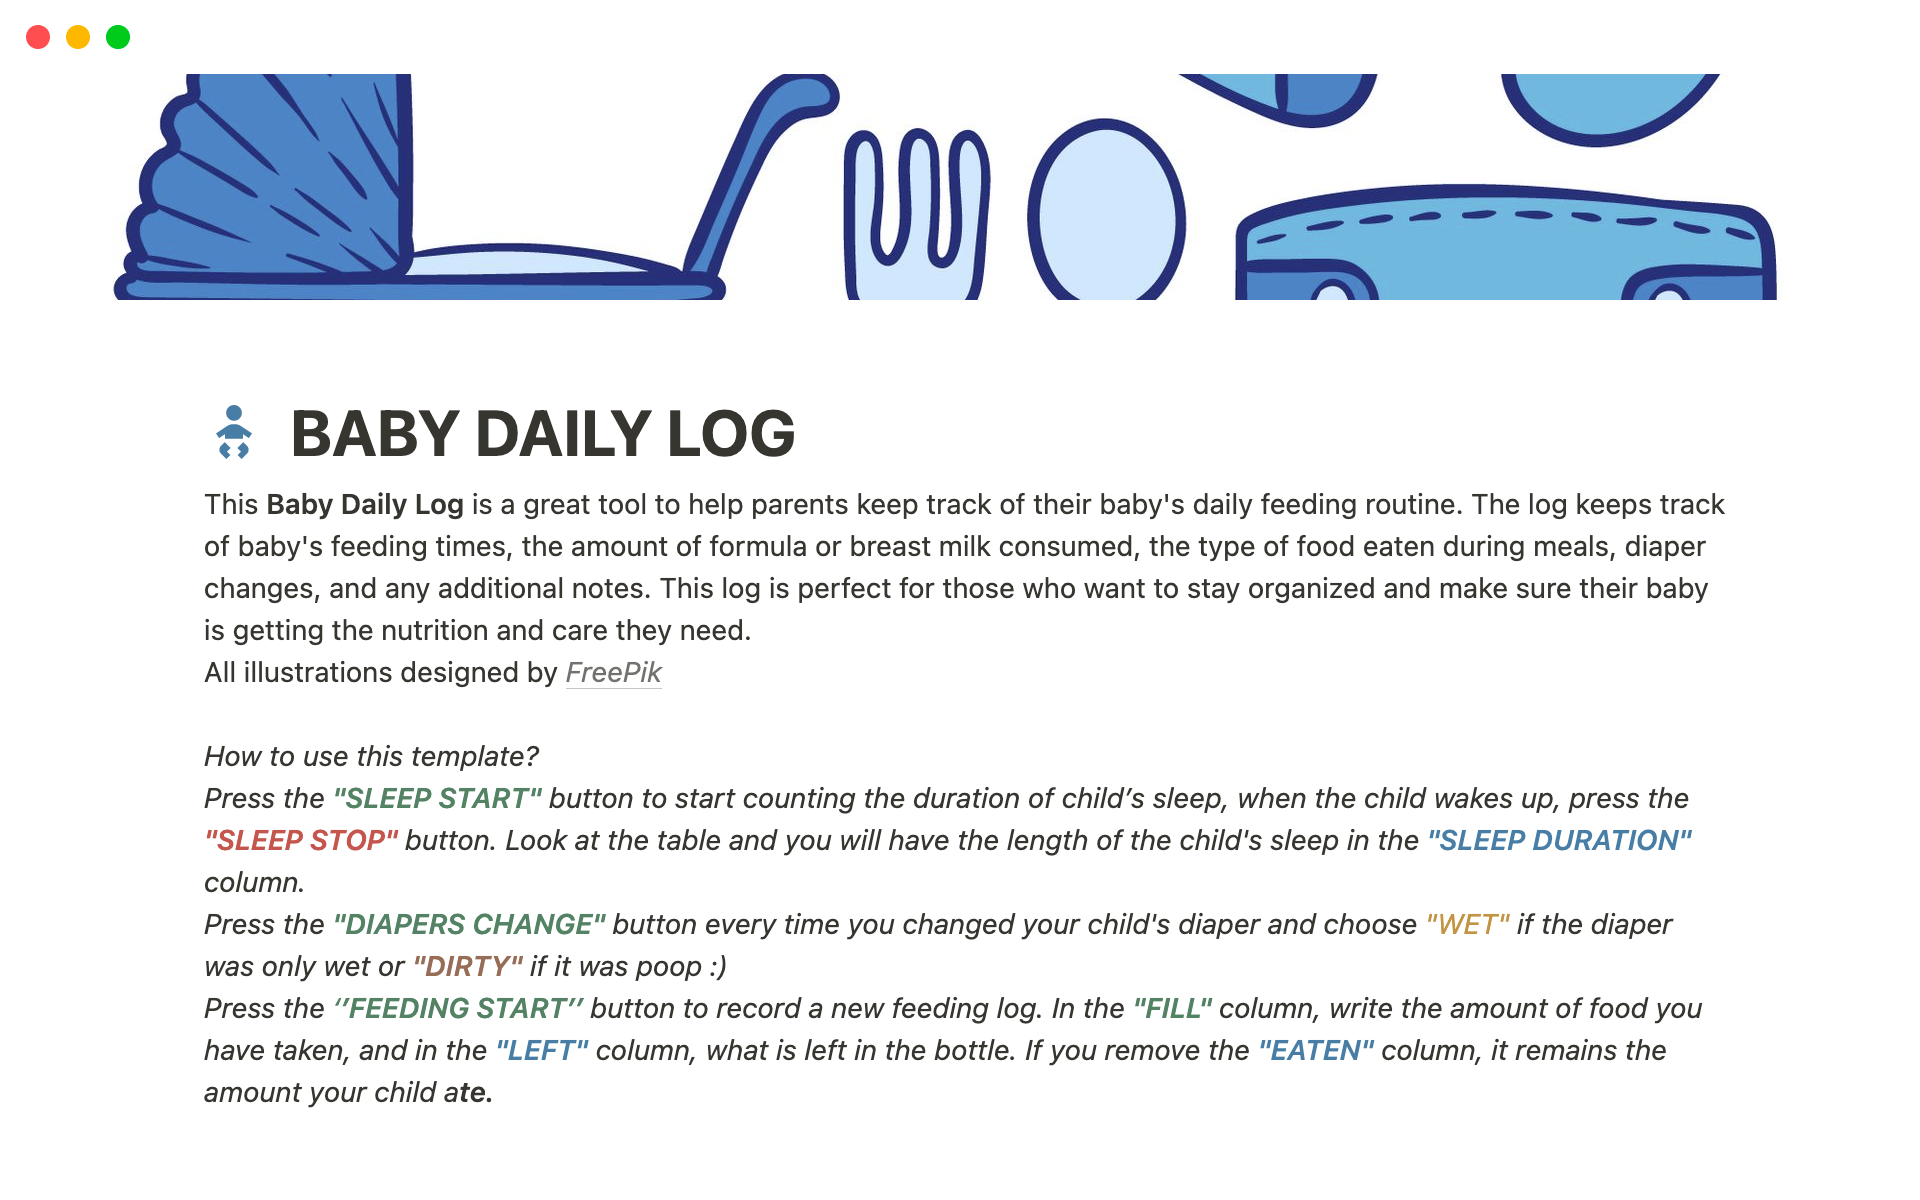 En förhandsgranskning av mallen för Baby Daily Log